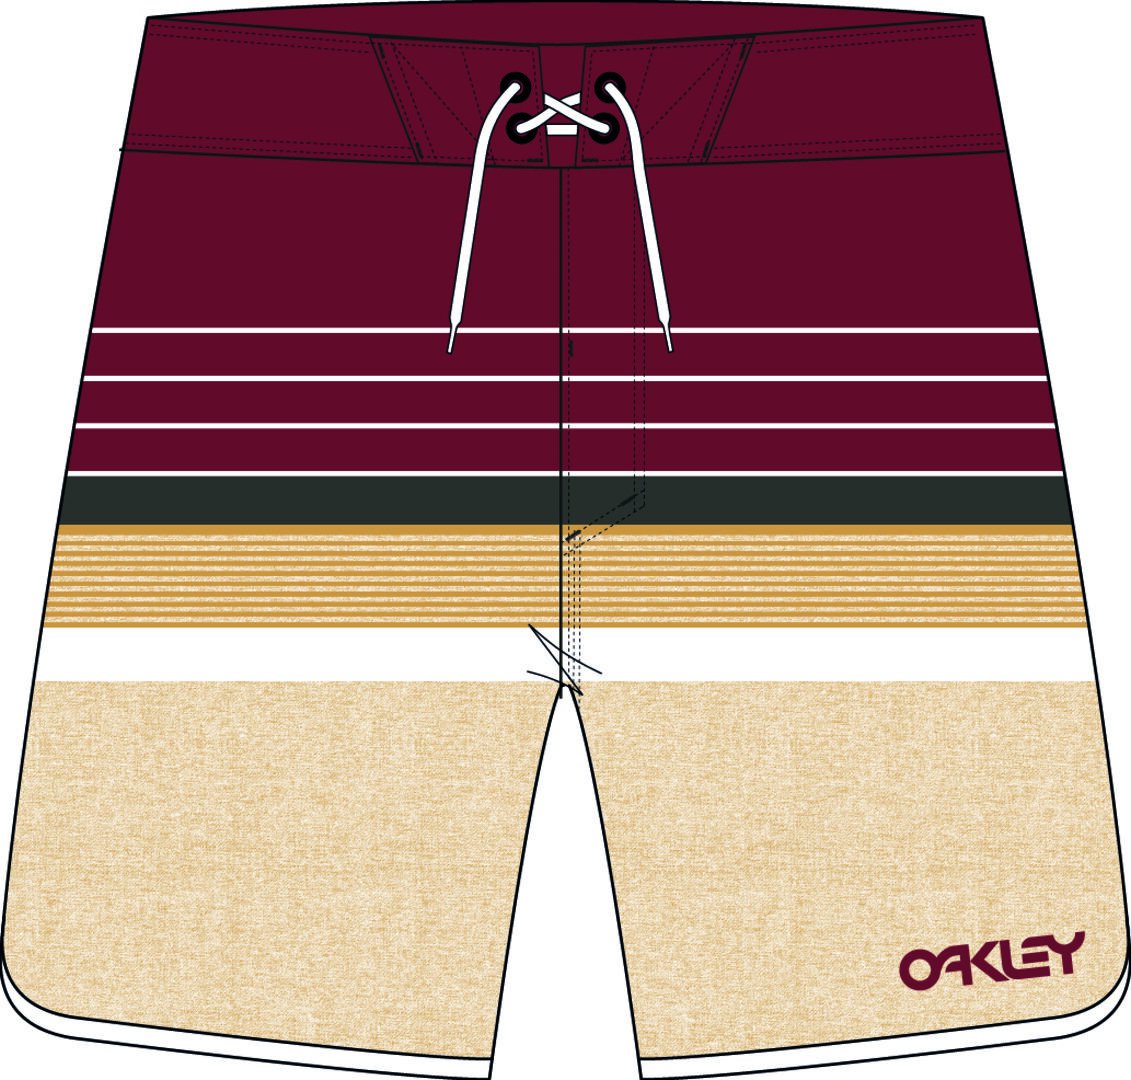 Oakley Retro Lines 18 Rc Badehose